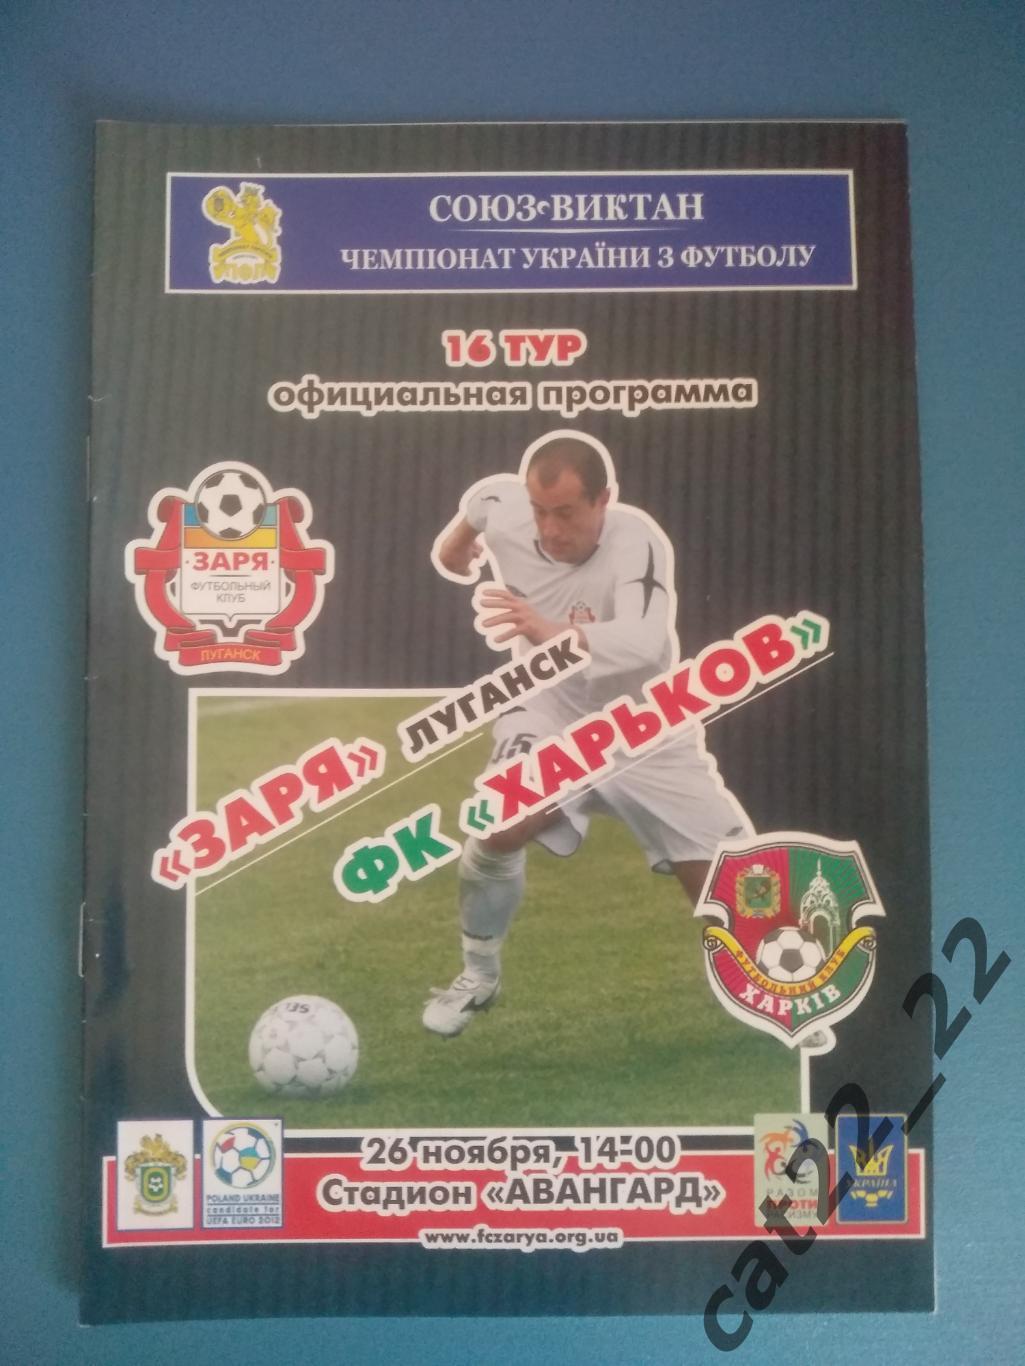 Заря Луганск - ФК Харьков Харьков 2006/2007